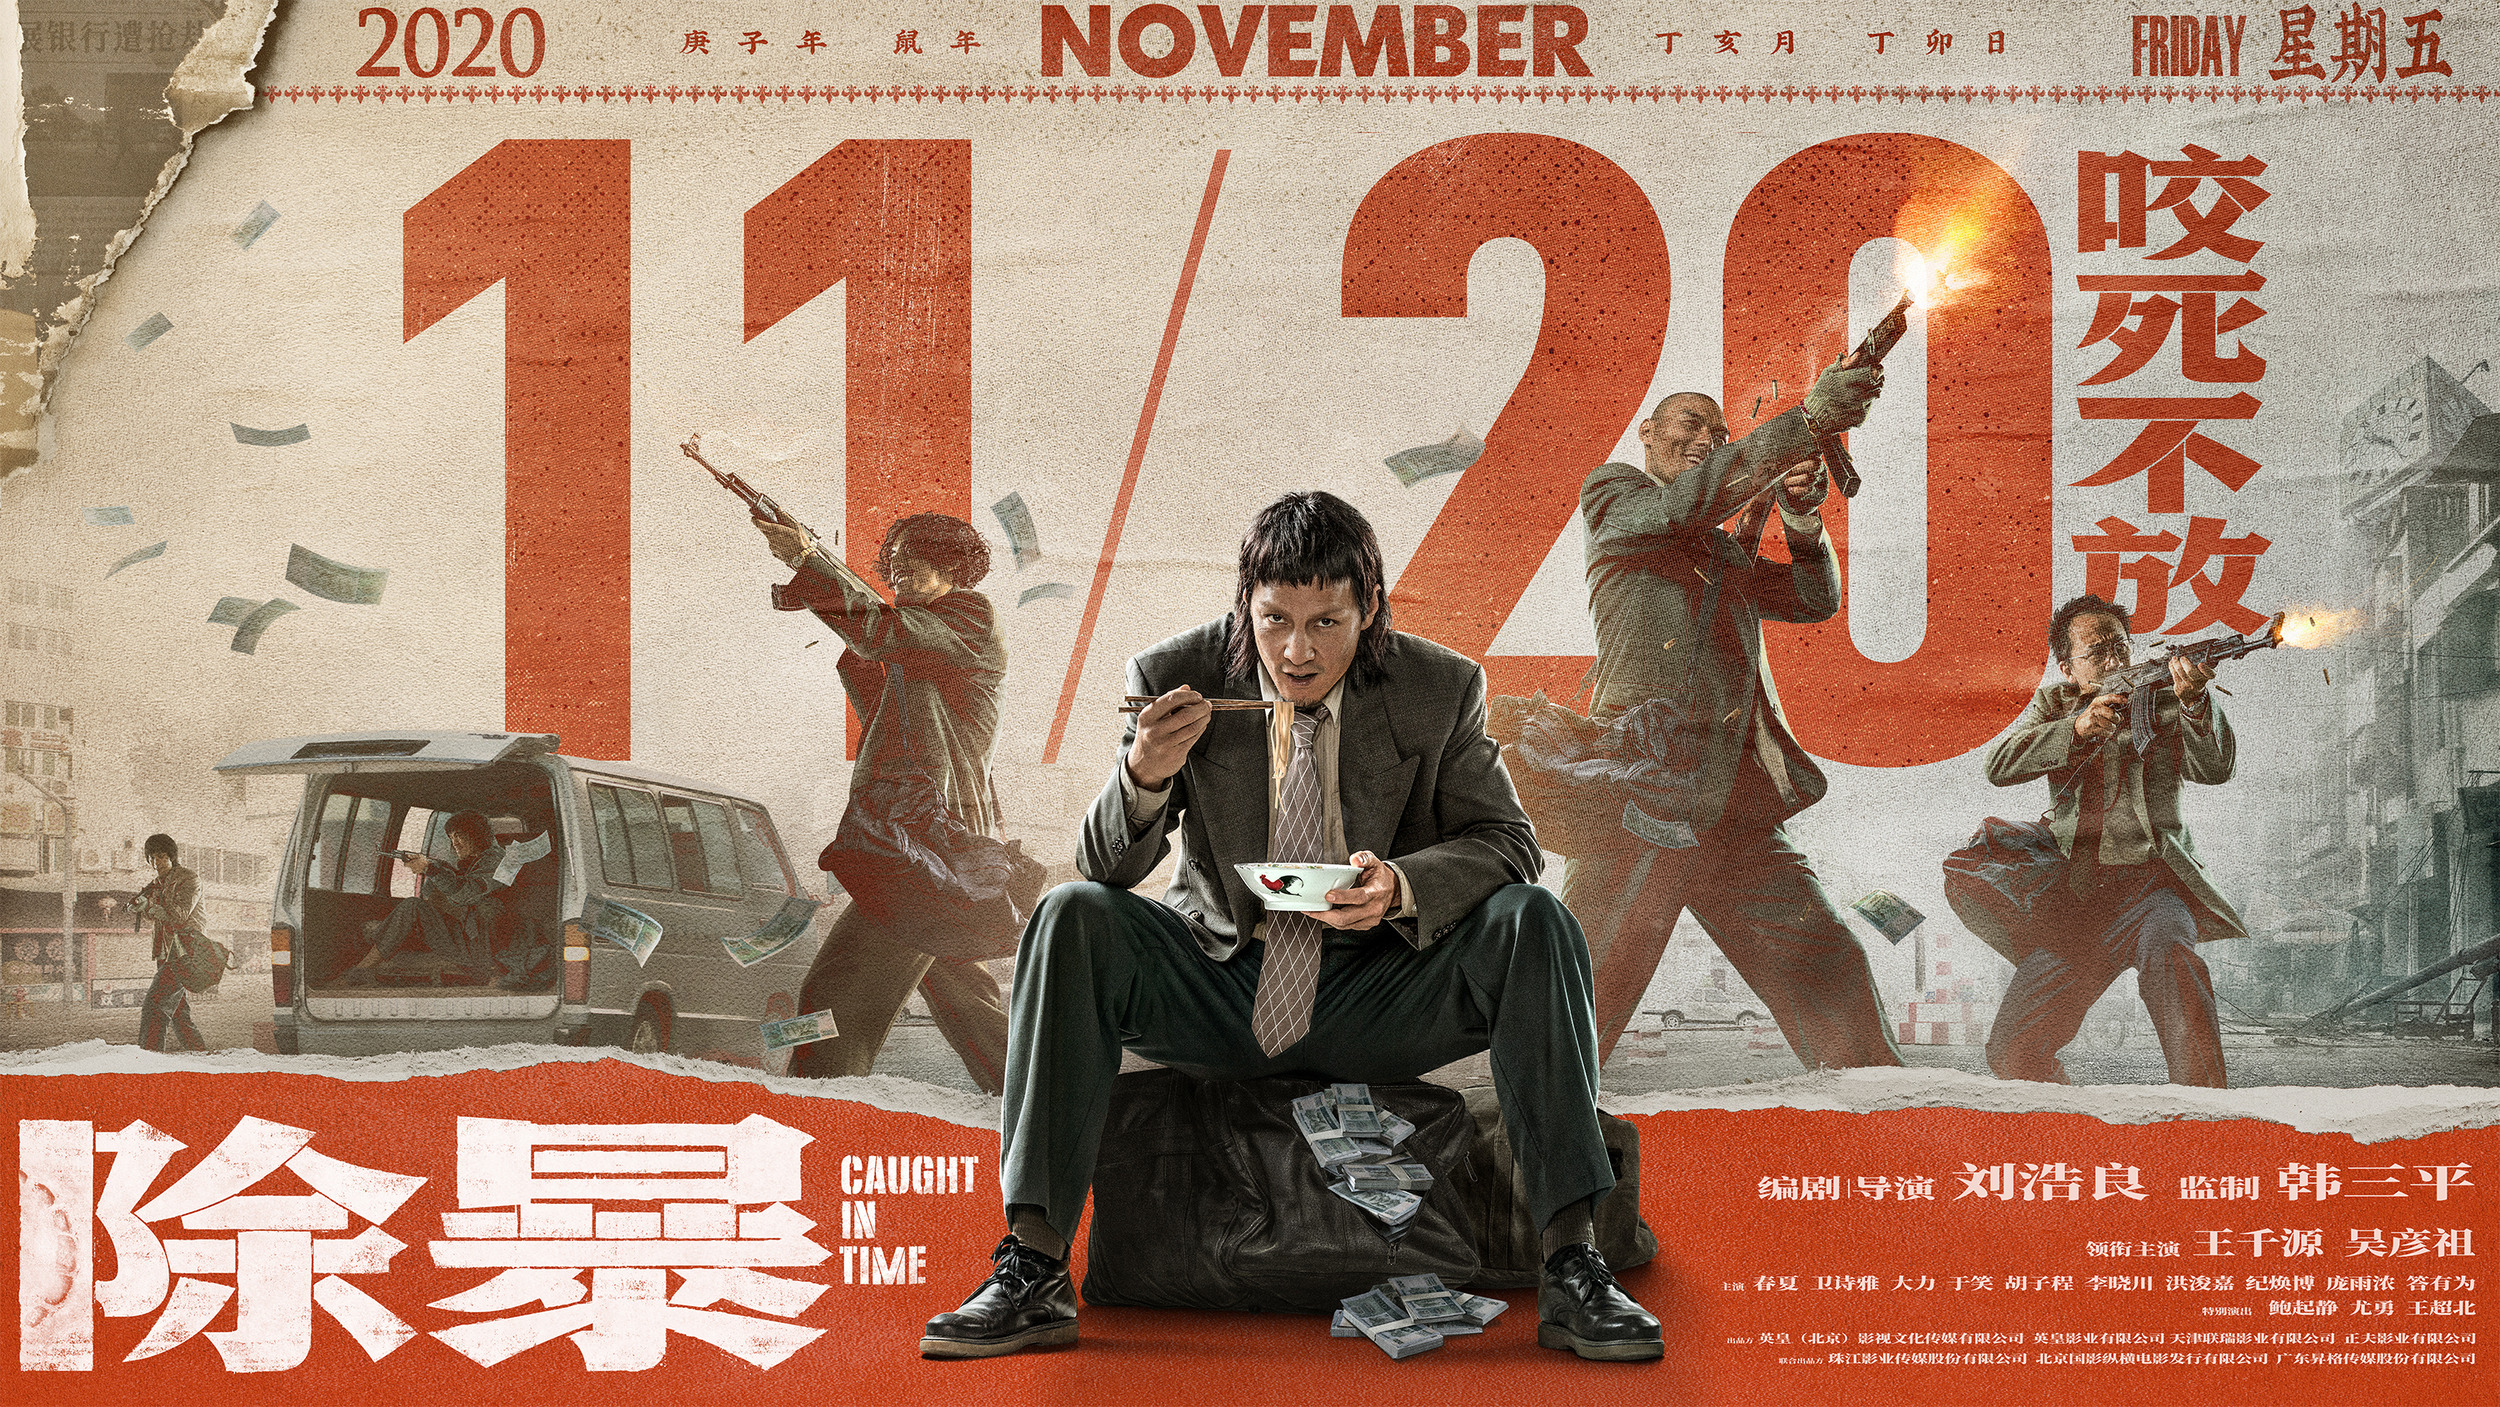 Mega Sized Movie Poster Image for Chu bao (#2 of 8)